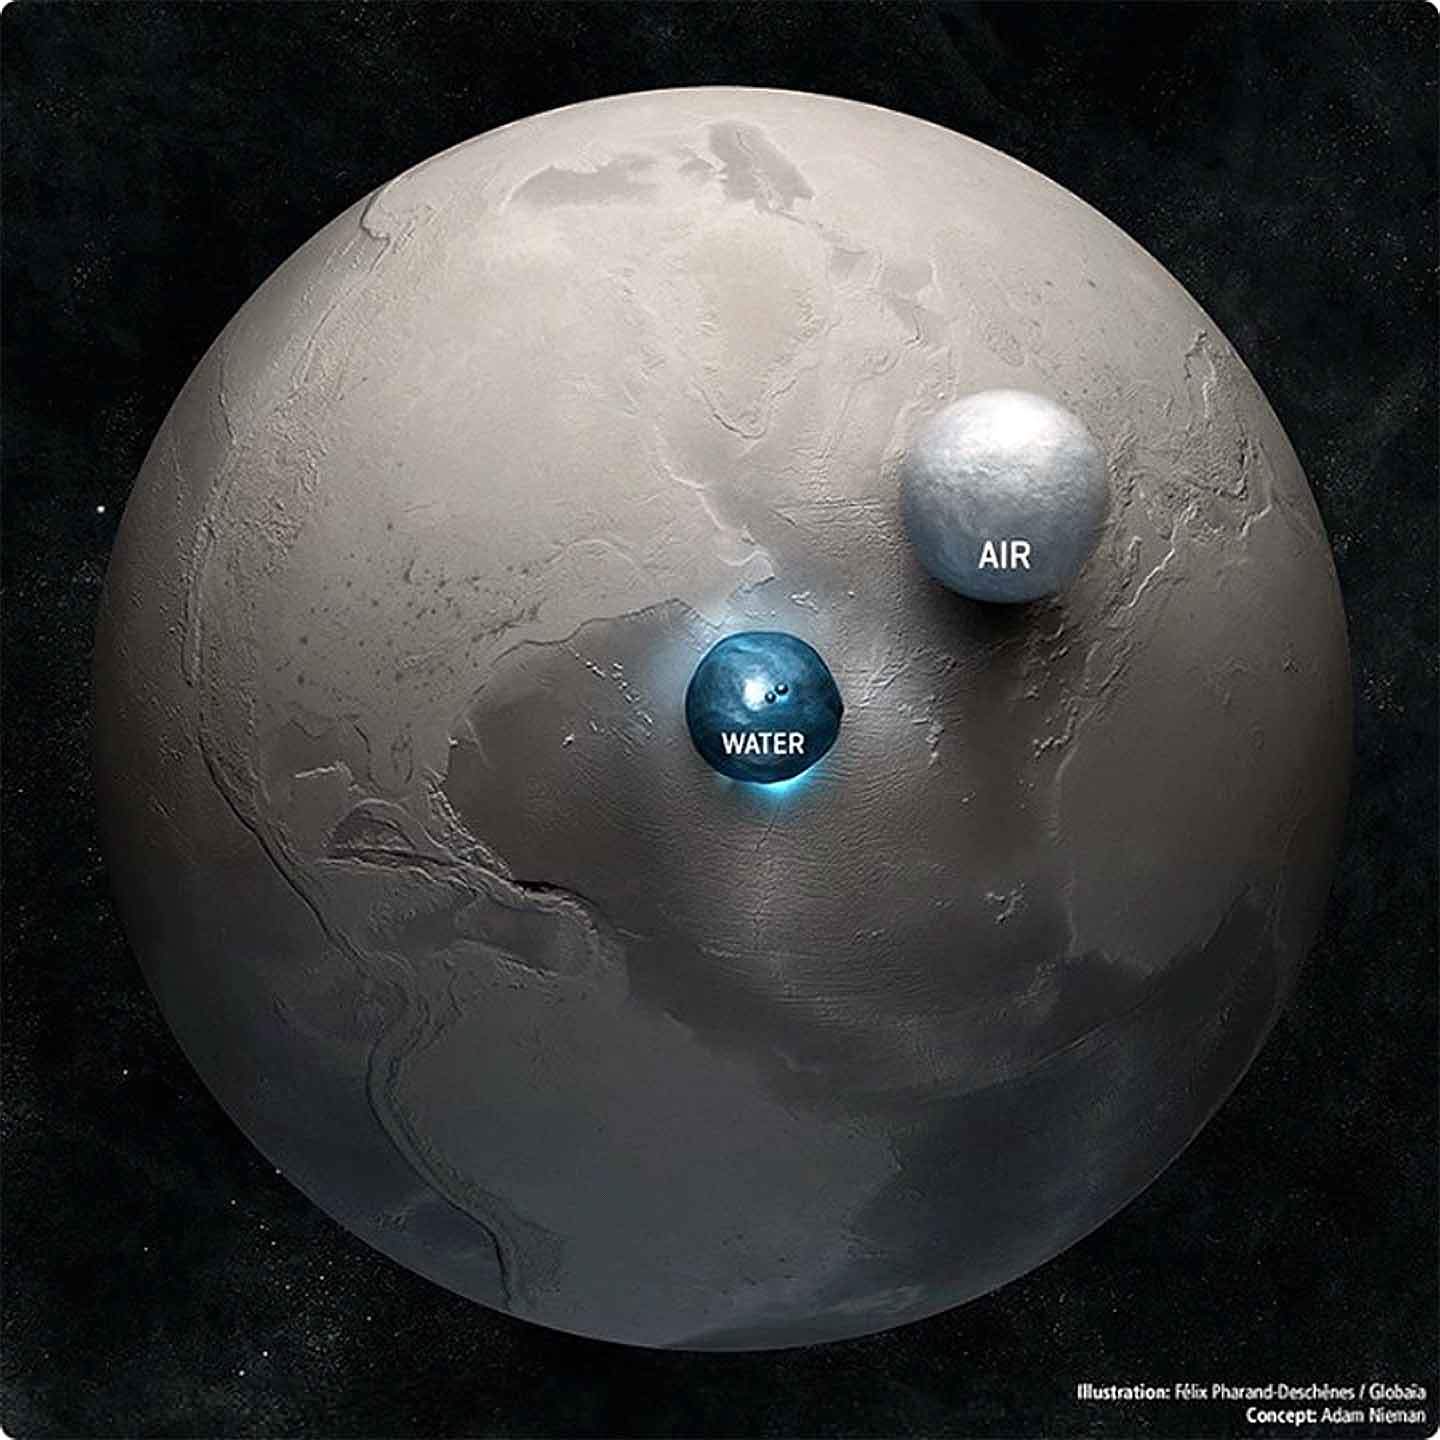 Todo el agua y el aire del planeta representado en forma de dos esferas junto a la Tierra.